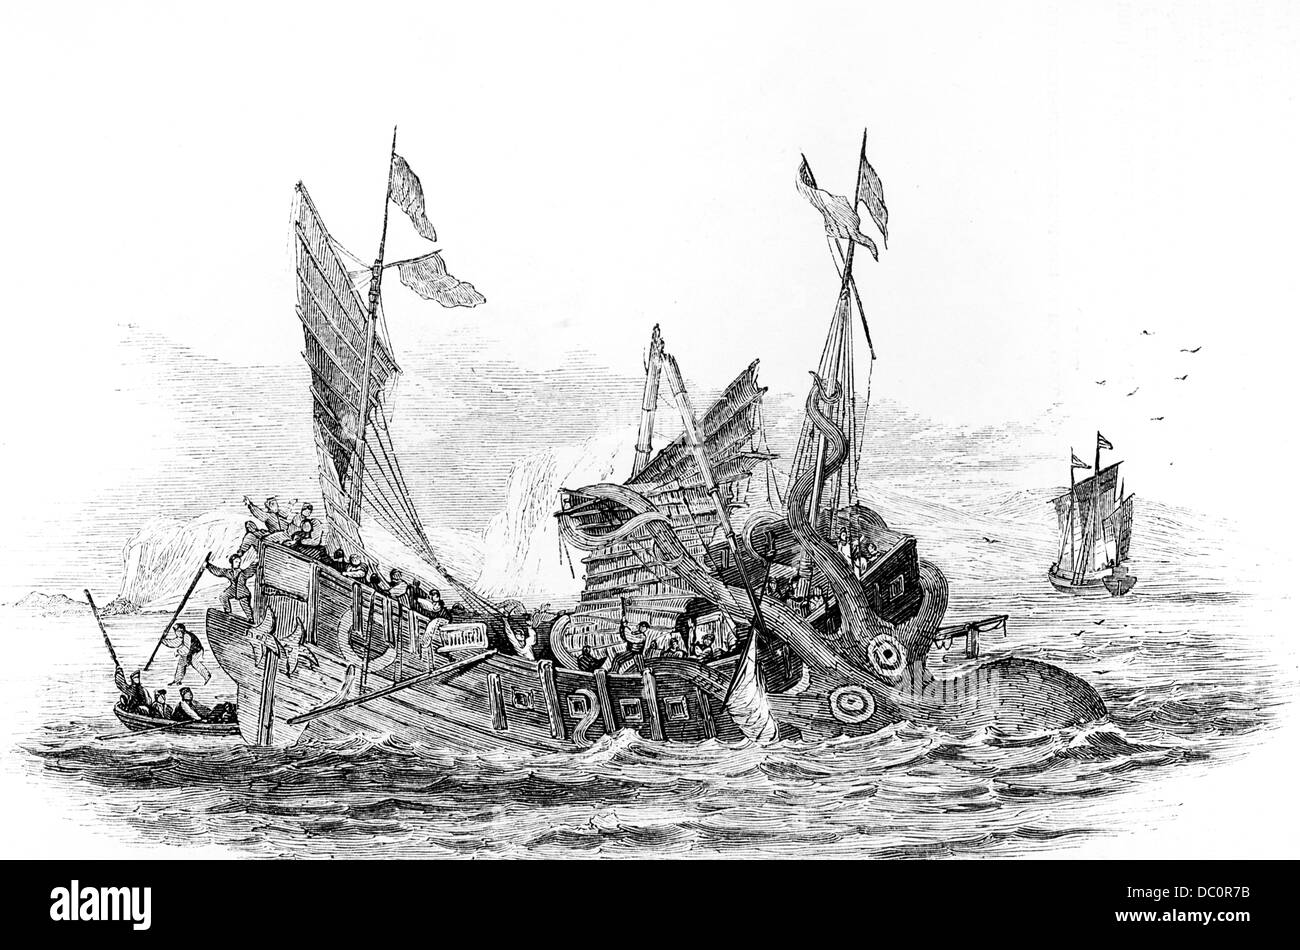 ILLUSTRATION DER COLASSAL SEA MONSTER SQUID ANGRIFF AUF EIN SCHIFF-SCHIFF IN DER INDISCHEN MEER GAFF RIGGED CHINESISCHE DSCHUNKE 1800S 1860S Stockfoto